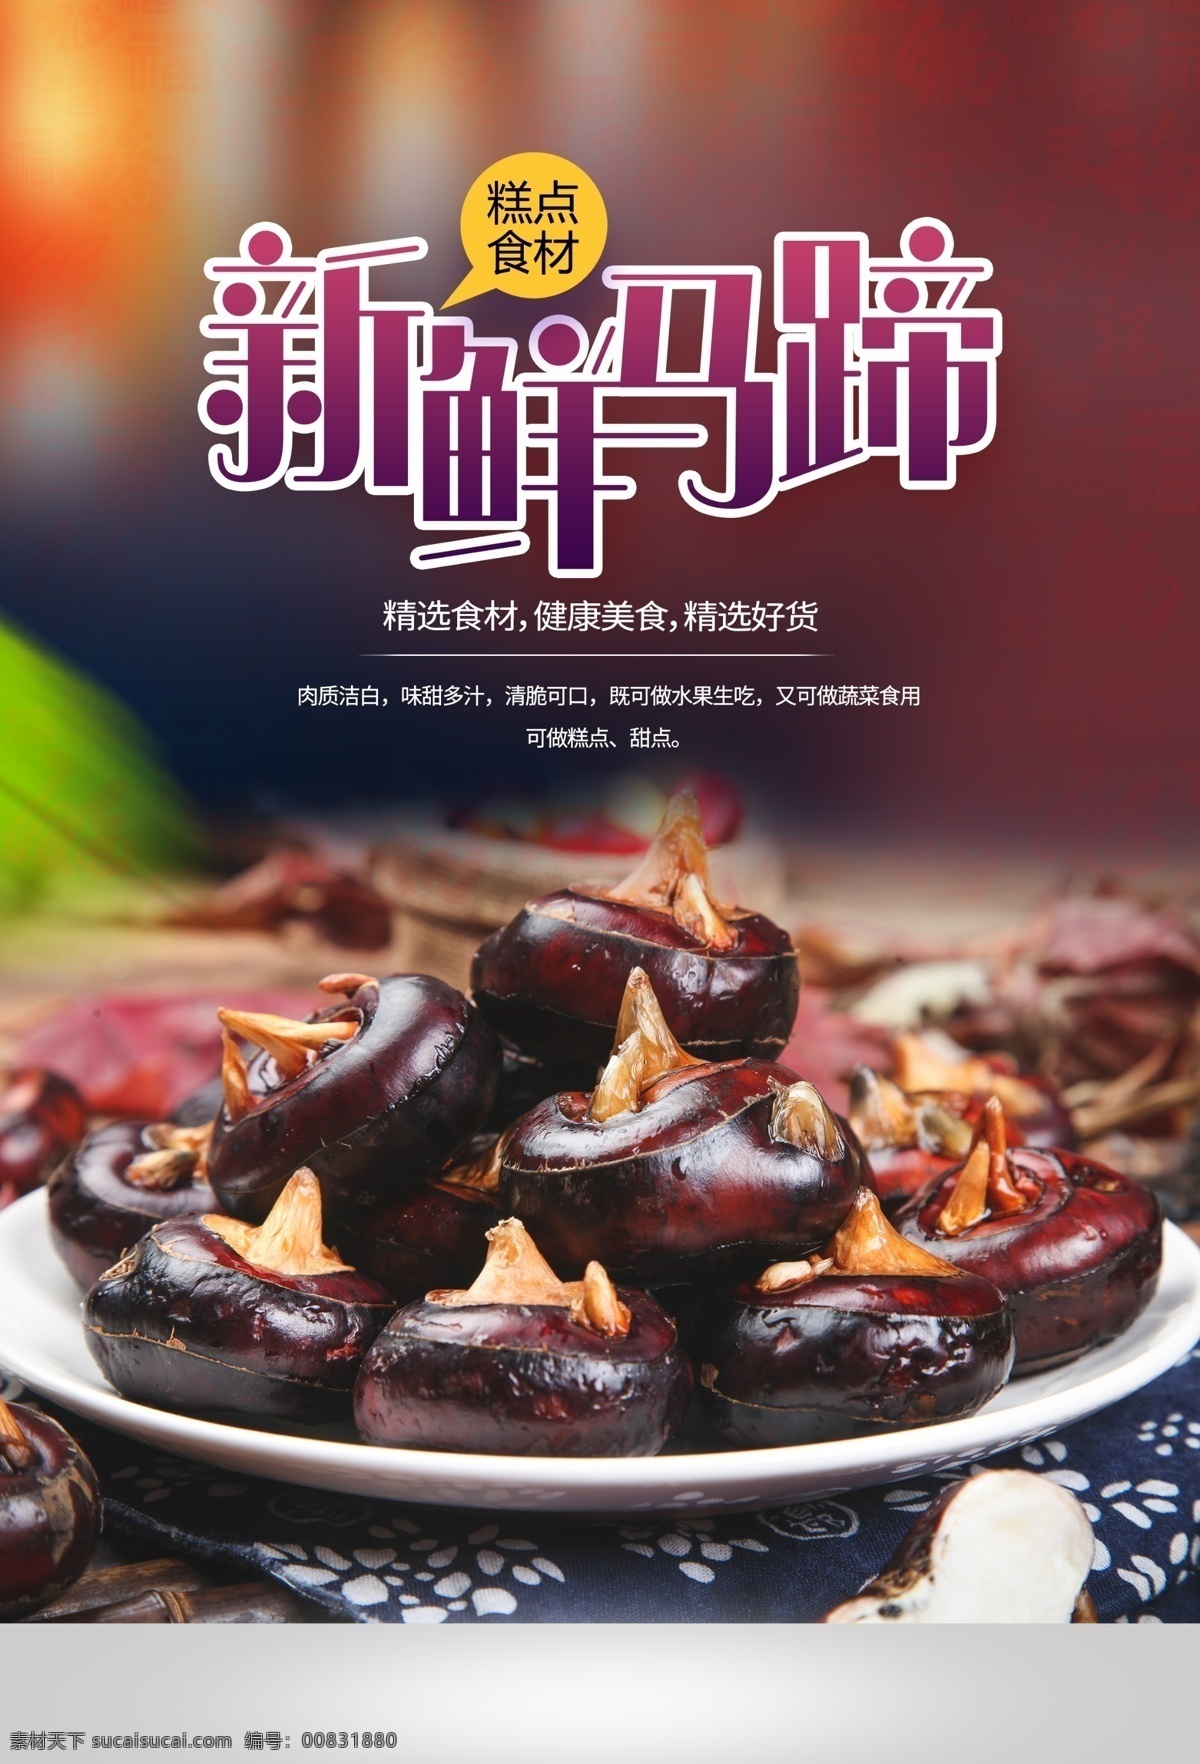 新鲜 马蹄 水果 活动 宣传海报 素材图片 新鲜马蹄 宣传 海报 餐饮美食 类